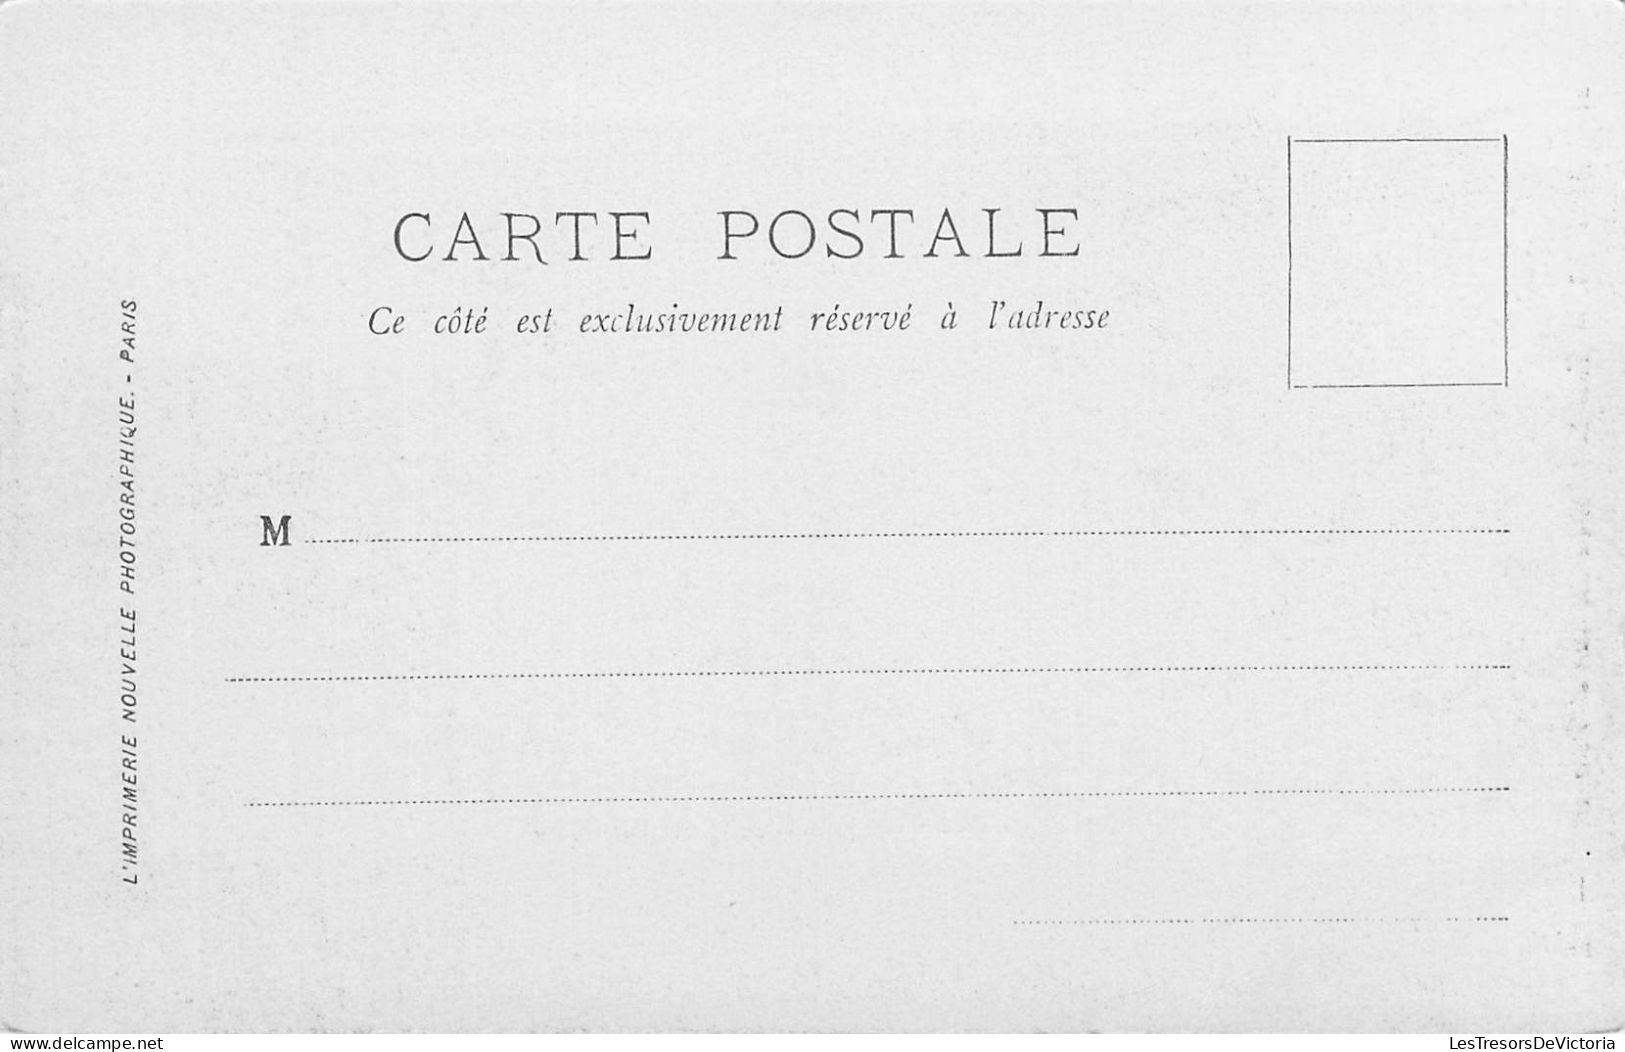 FRANCE - 49 - ANGERS - Tour Sud Est Du Château Et Panorama - LL - Carte Postale Ancienne - Angers